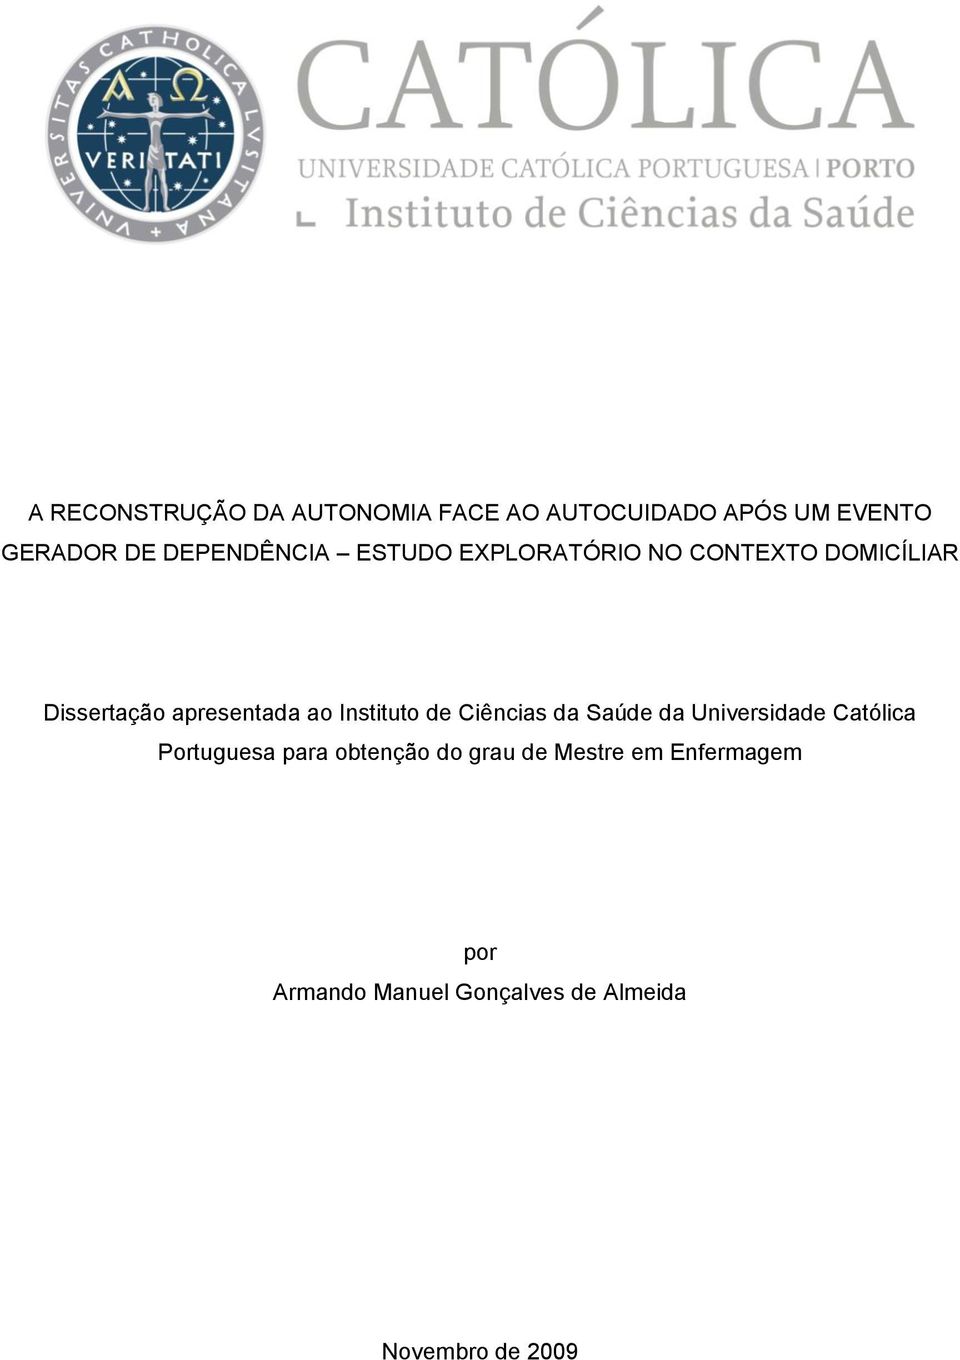 Instituto de Ciências da Saúde da Universidade Católica Portuguesa para obtenção